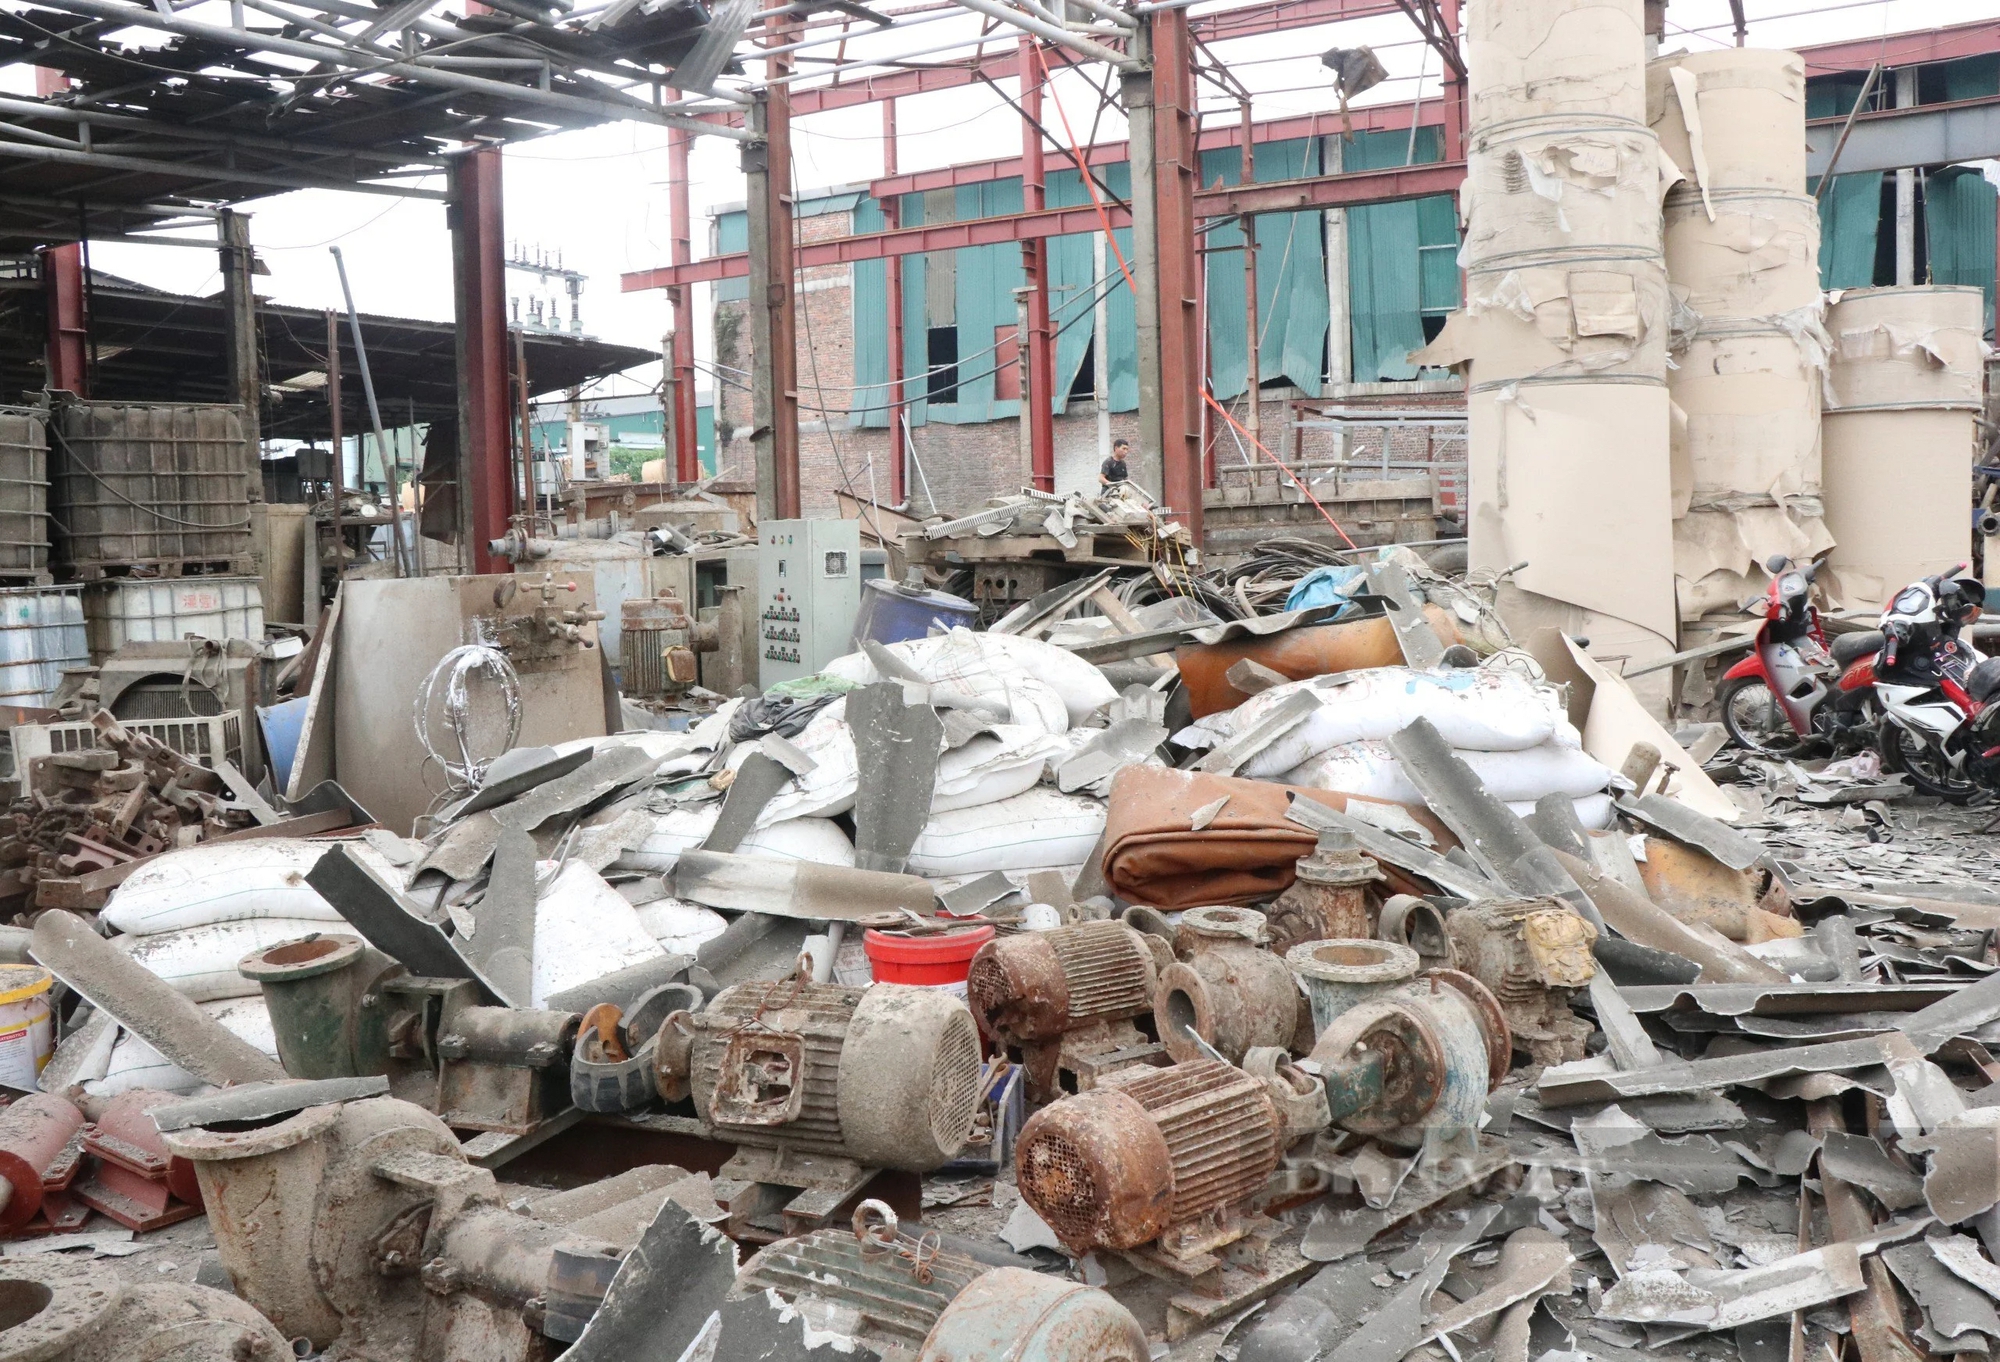 Hiện trường tan hoang sau vụ nổ khiến 1 người tử vong, 2 người bị thương tại khu công nghiệp ở Bắc Ninh- Ảnh 5.